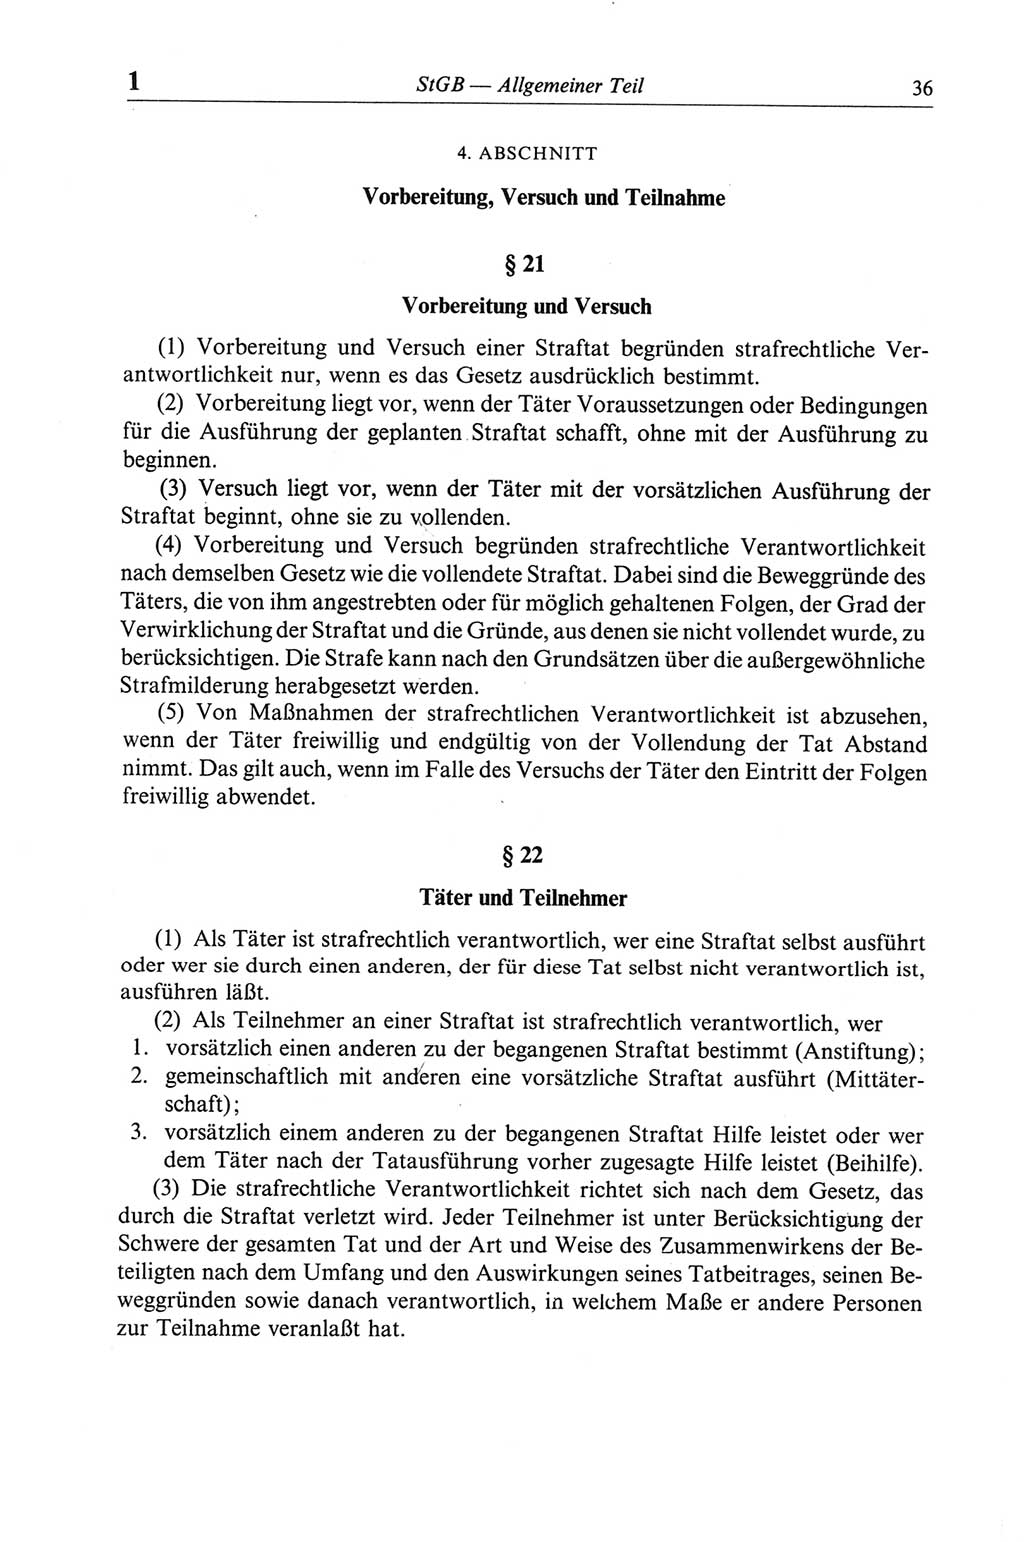 Strafgesetzbuch (StGB) der Deutschen Demokratischen Republik (DDR) und angrenzende Gesetze und Bestimmungen 1968, Seite 36 (StGB Ges. Best. DDR 1968, S. 36)